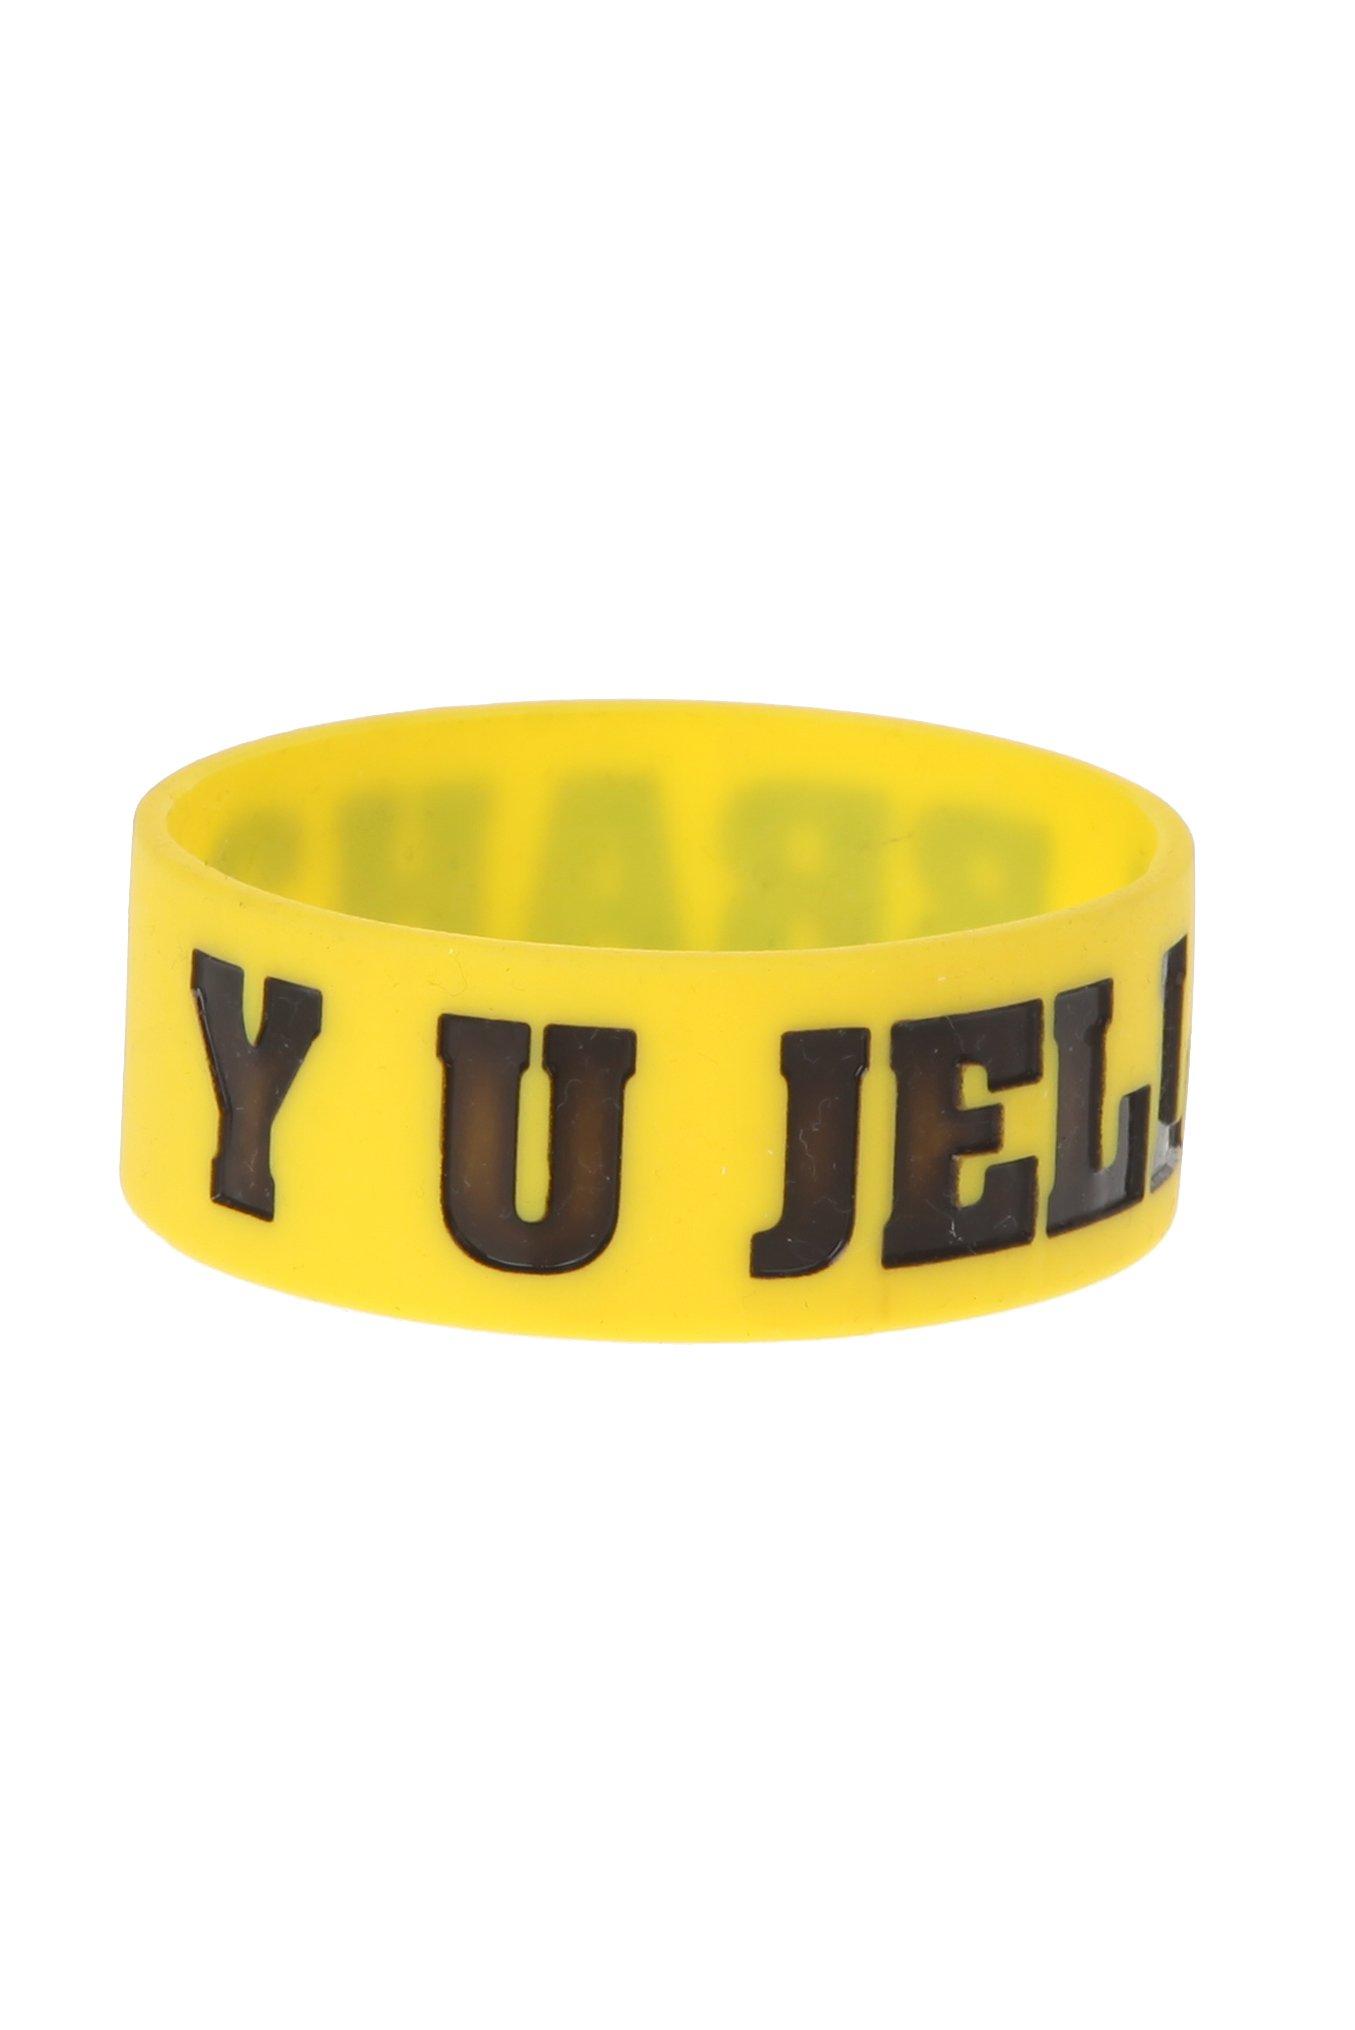 Yellow Y U Jelly Brah? Rubber Bracelet, , alternate